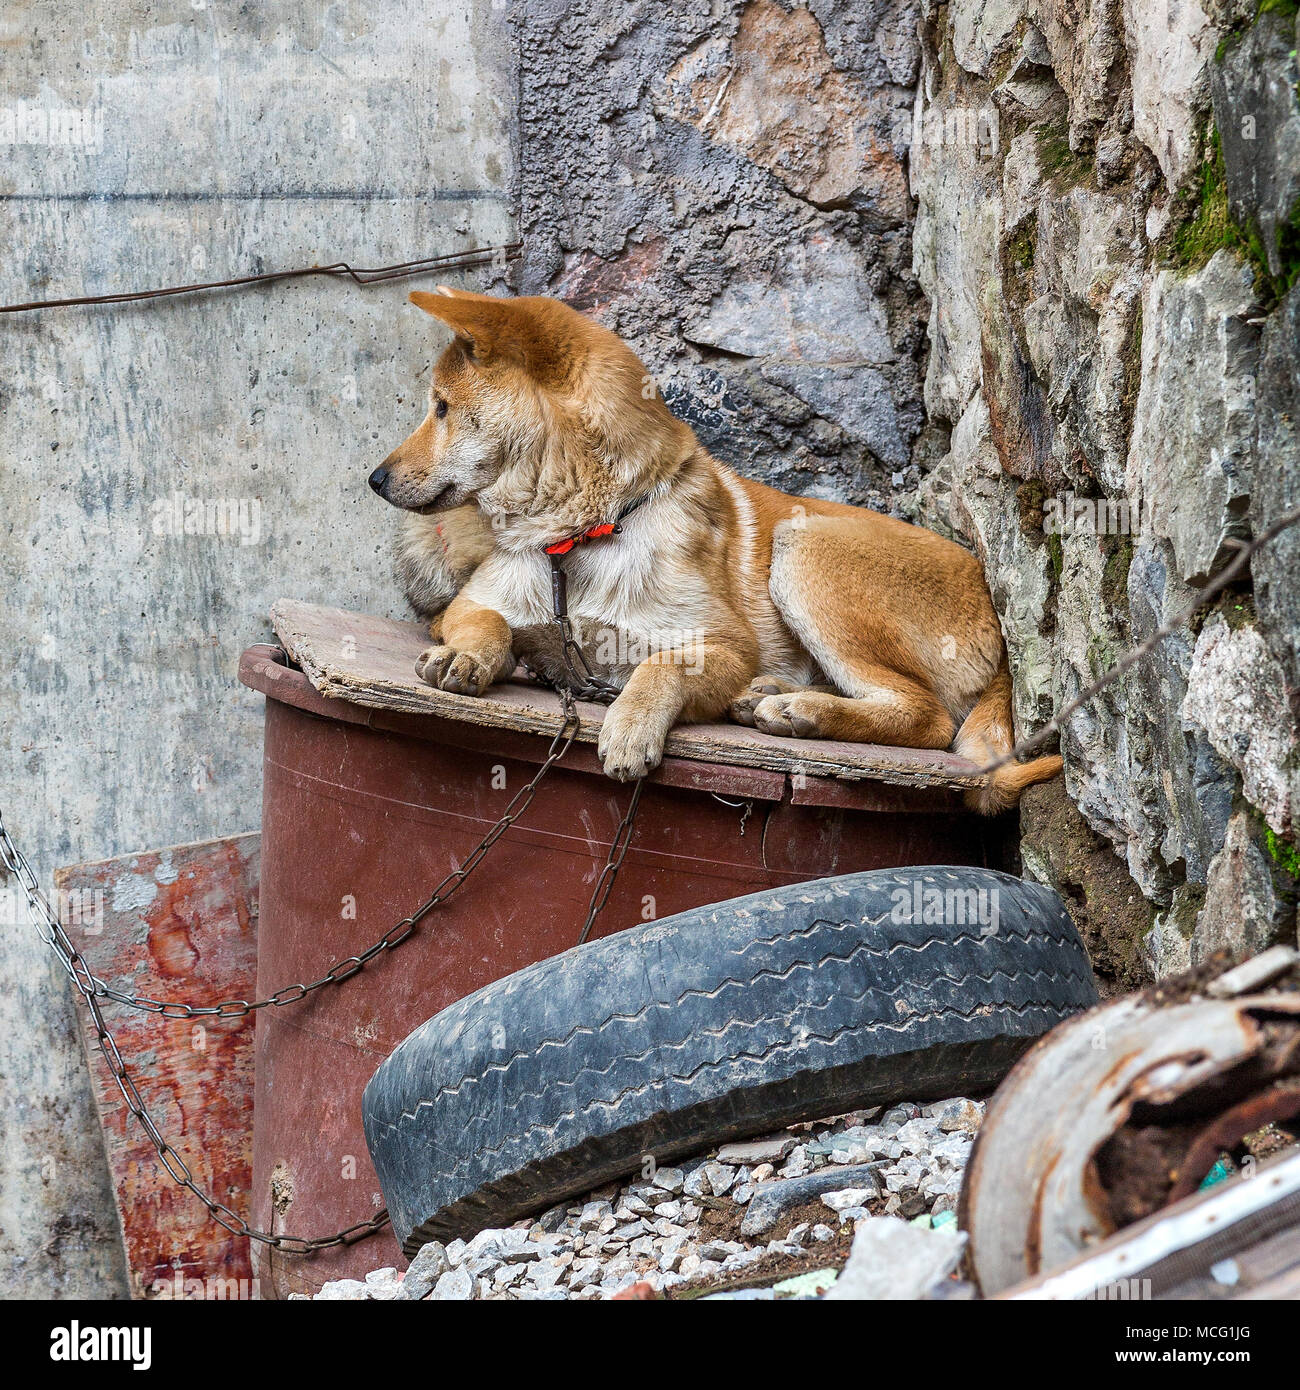 Un chien de garde de couleur d'or couché sur un morceau de bois entre les quelques gravats. Le chien est enchaîné à un mur et est attentif à ses alentours. Banque D'Images